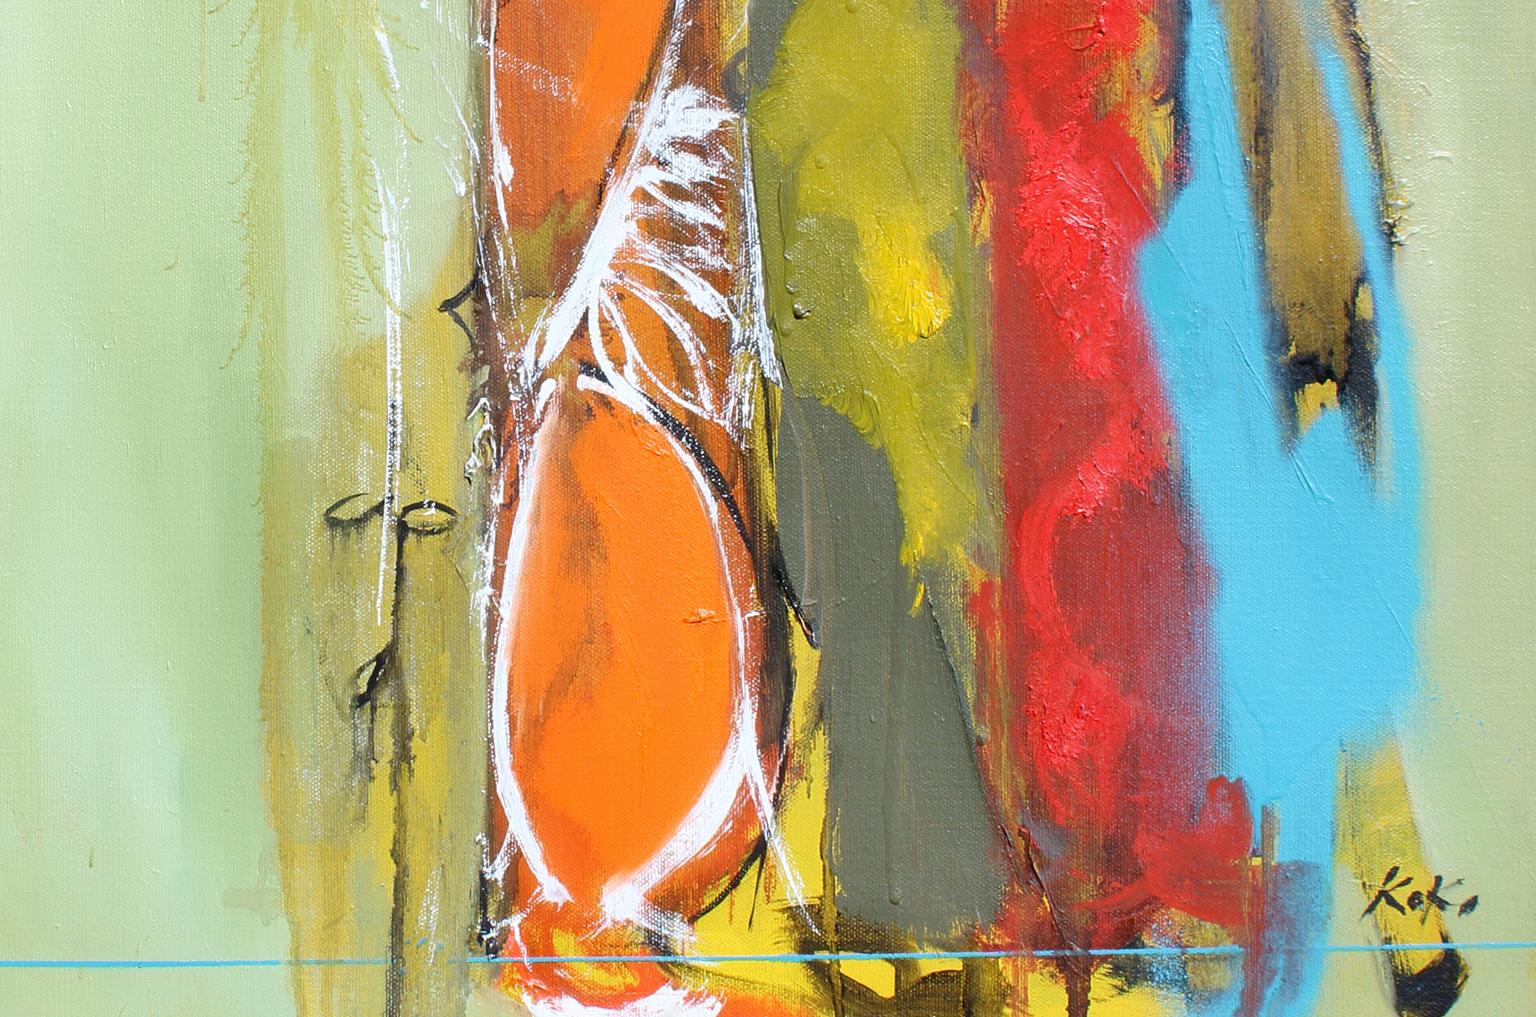 Identität, 20x24 Zoll, Öl auf Leinwand. Erwähnungen des Künstlers  Moderner moderner abstrakter expressionistischer Künstler. (Abstrakter Expressionismus), Painting, von KOKO HOVAGUIMIAN